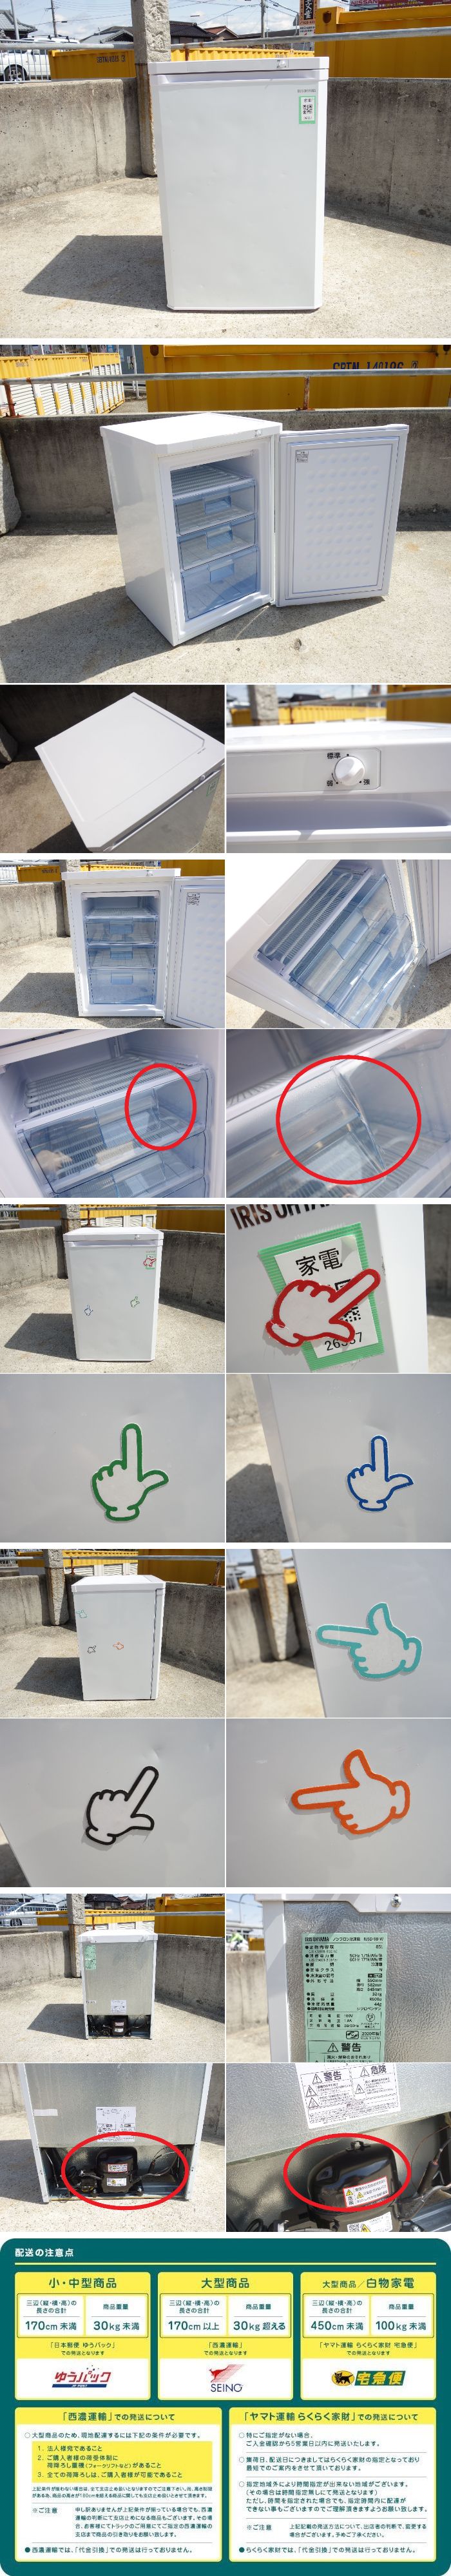 数量限定限定SALEO▼アイリスオーヤマ 冷凍庫 冷凍ストッカー フリーザ 2020年 85L 1ドア 耐熱性能天板 引き出しタイプ IUSD-98B (26337) 冷凍庫